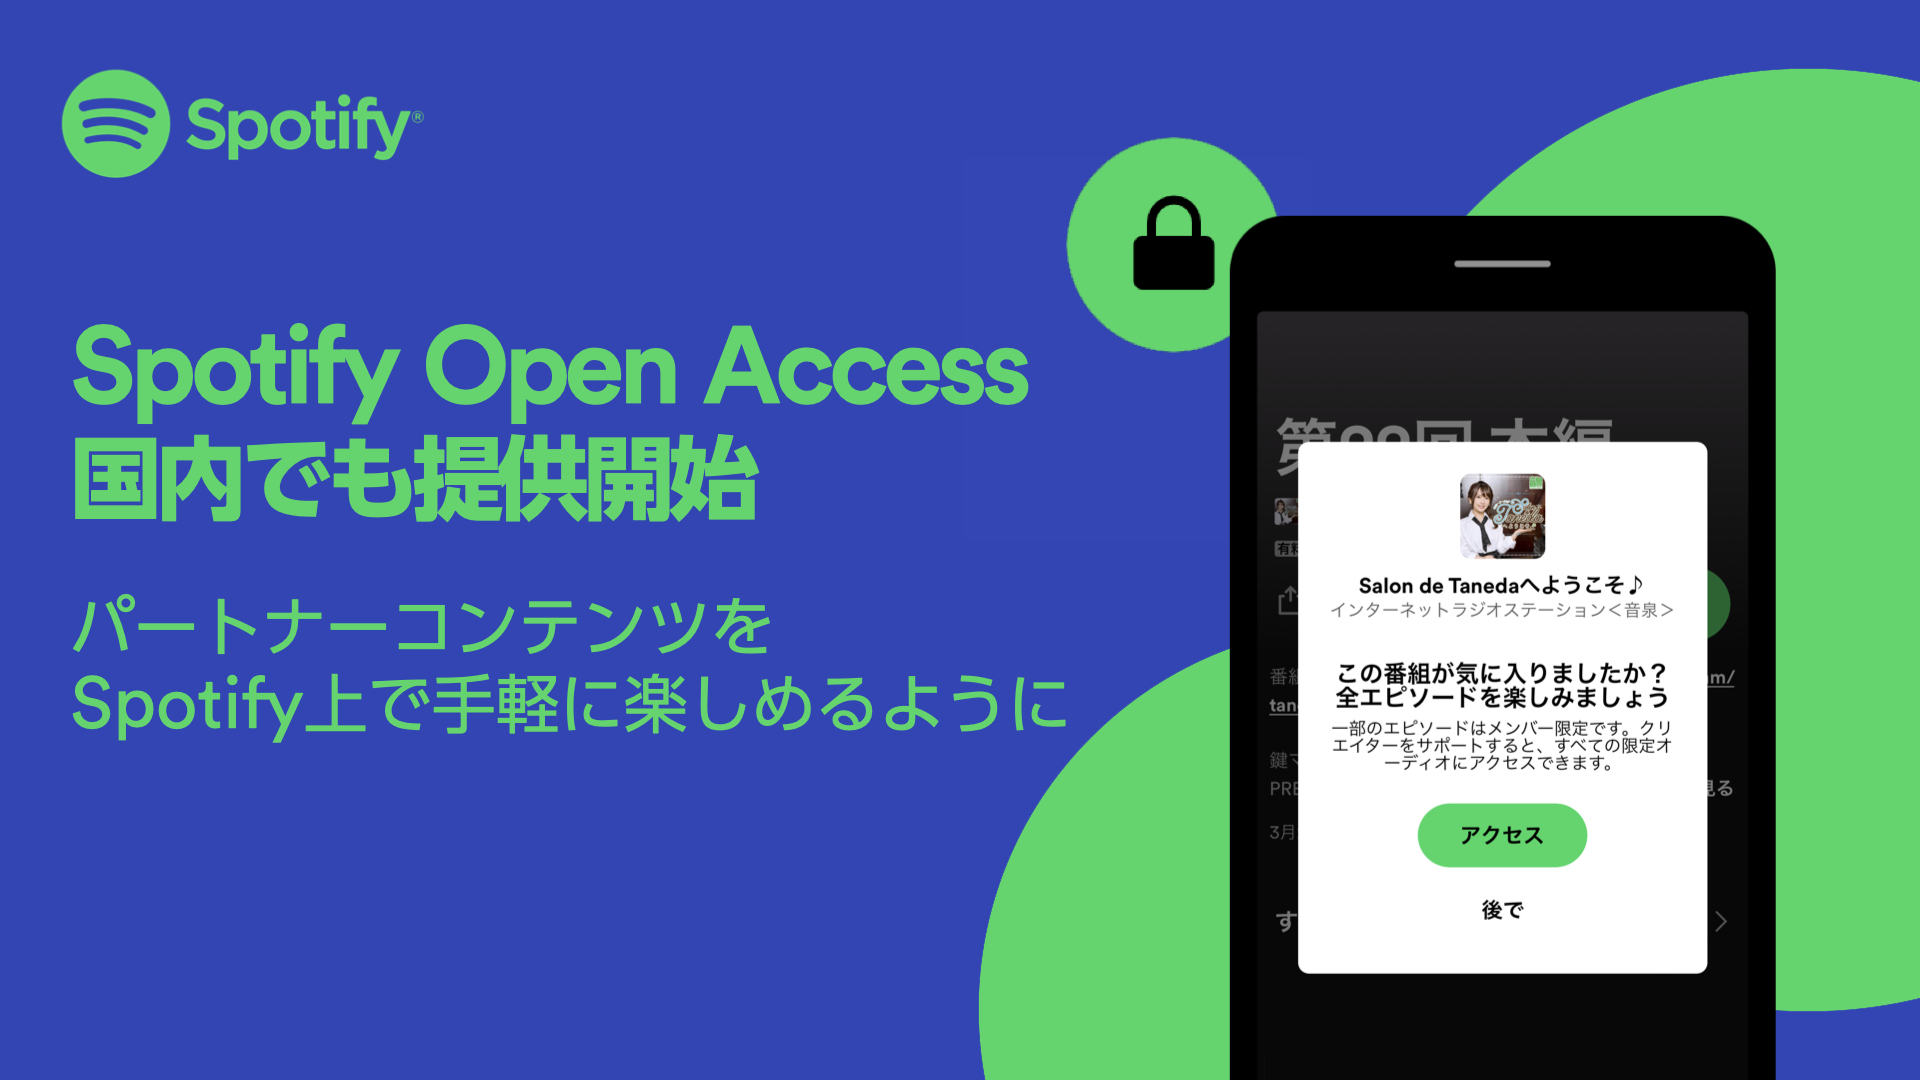 「Spotify Open Access」国内で提供開始